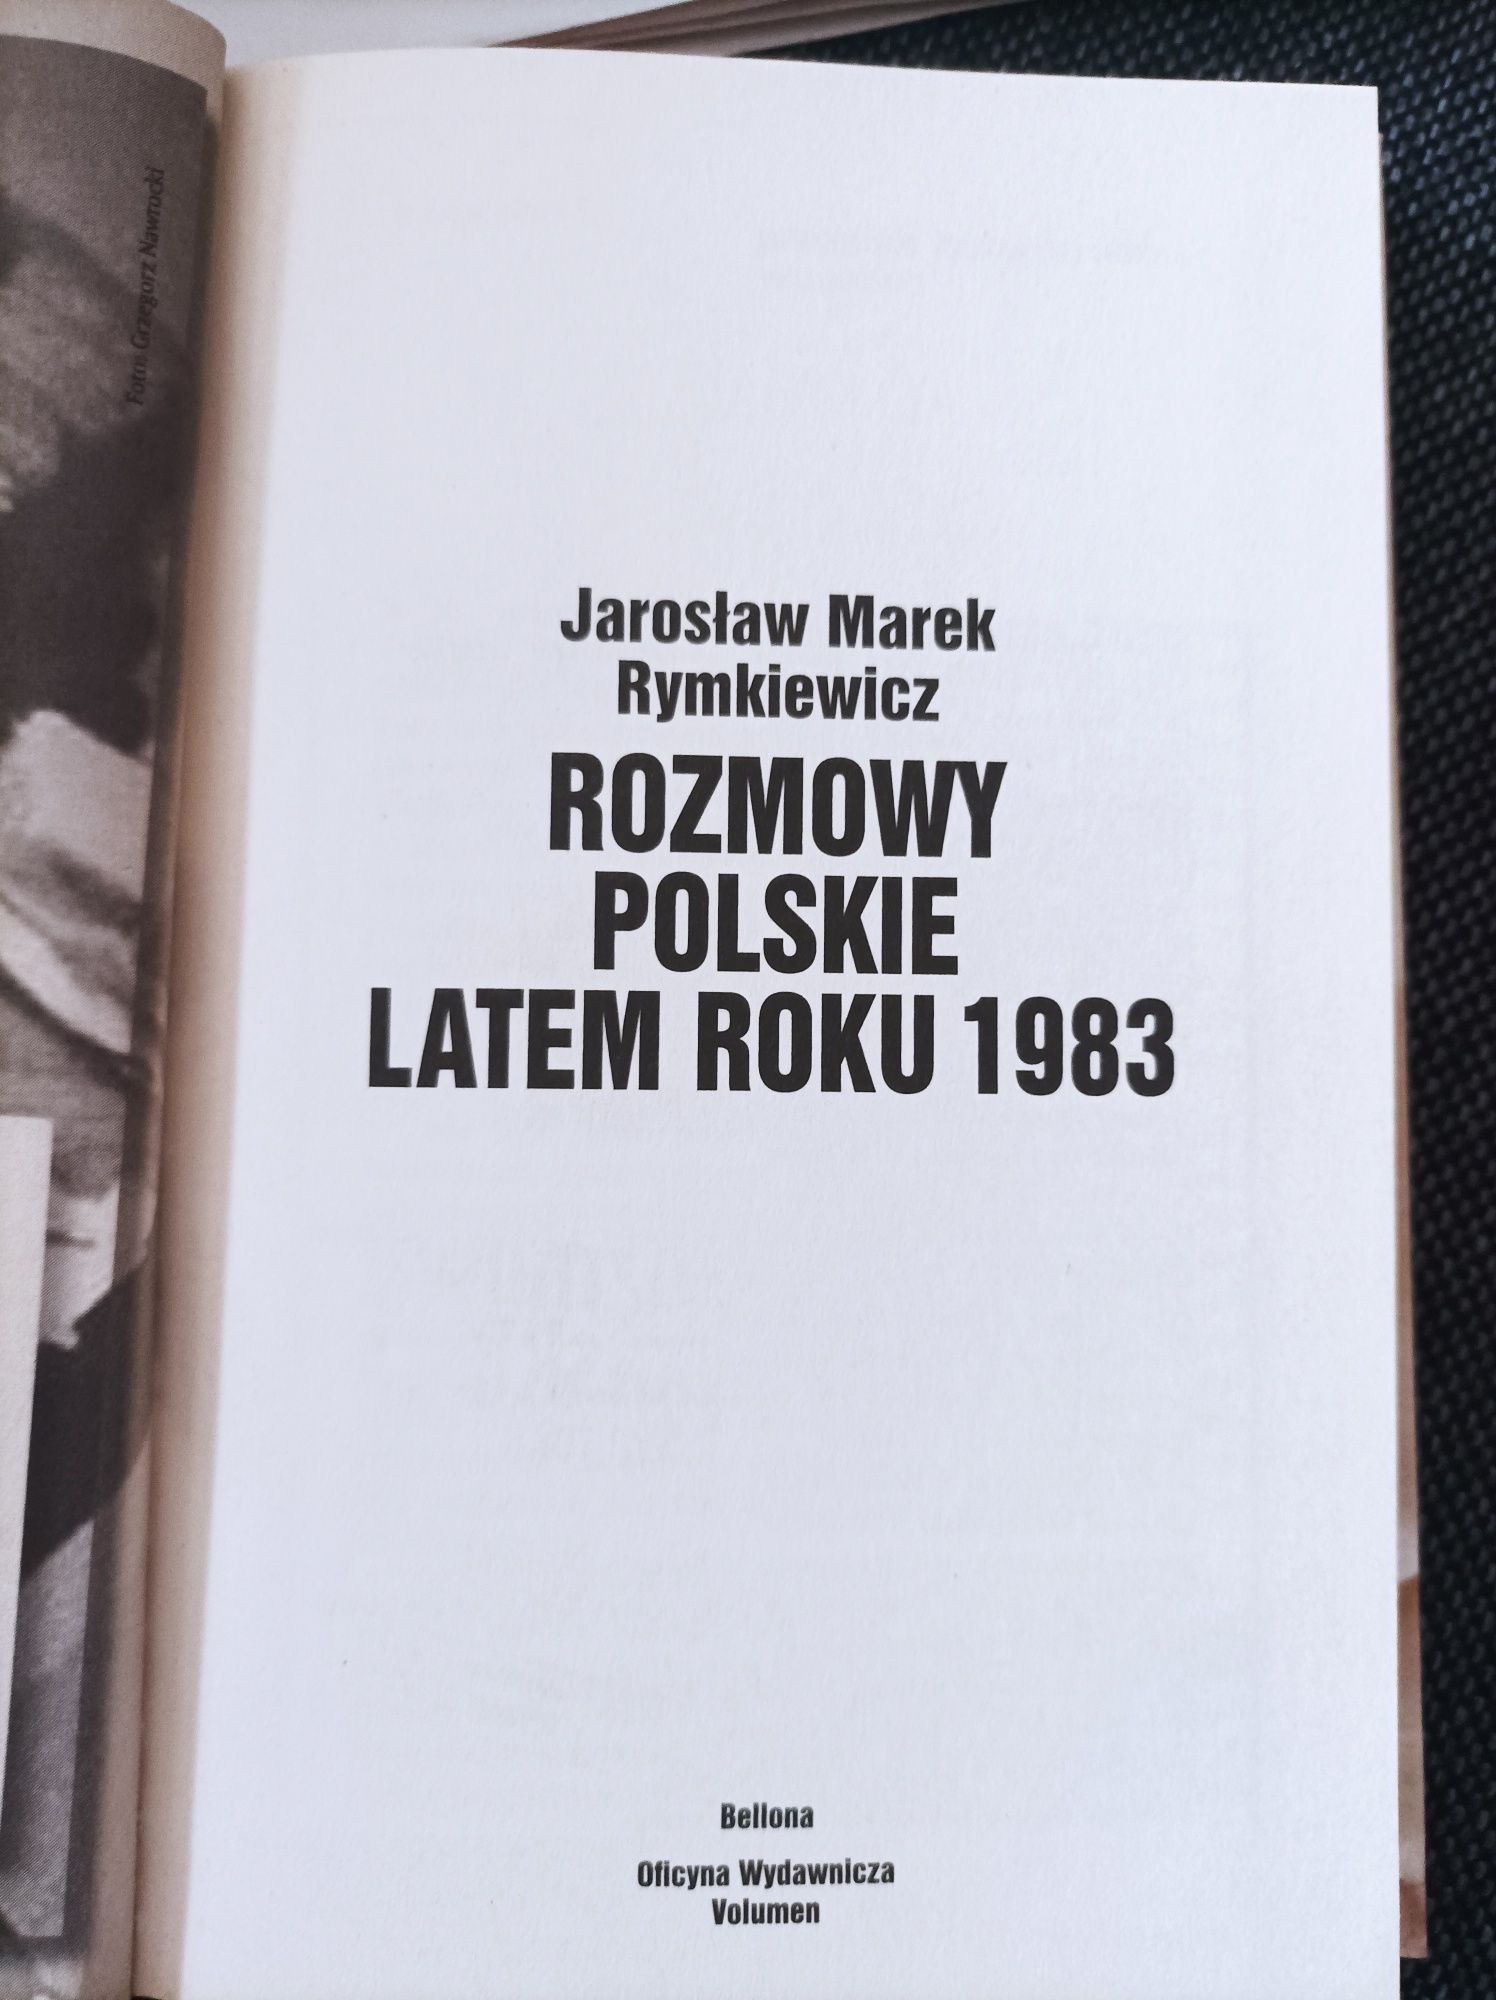 Rozmowy polskie latem 1983 roku powieść